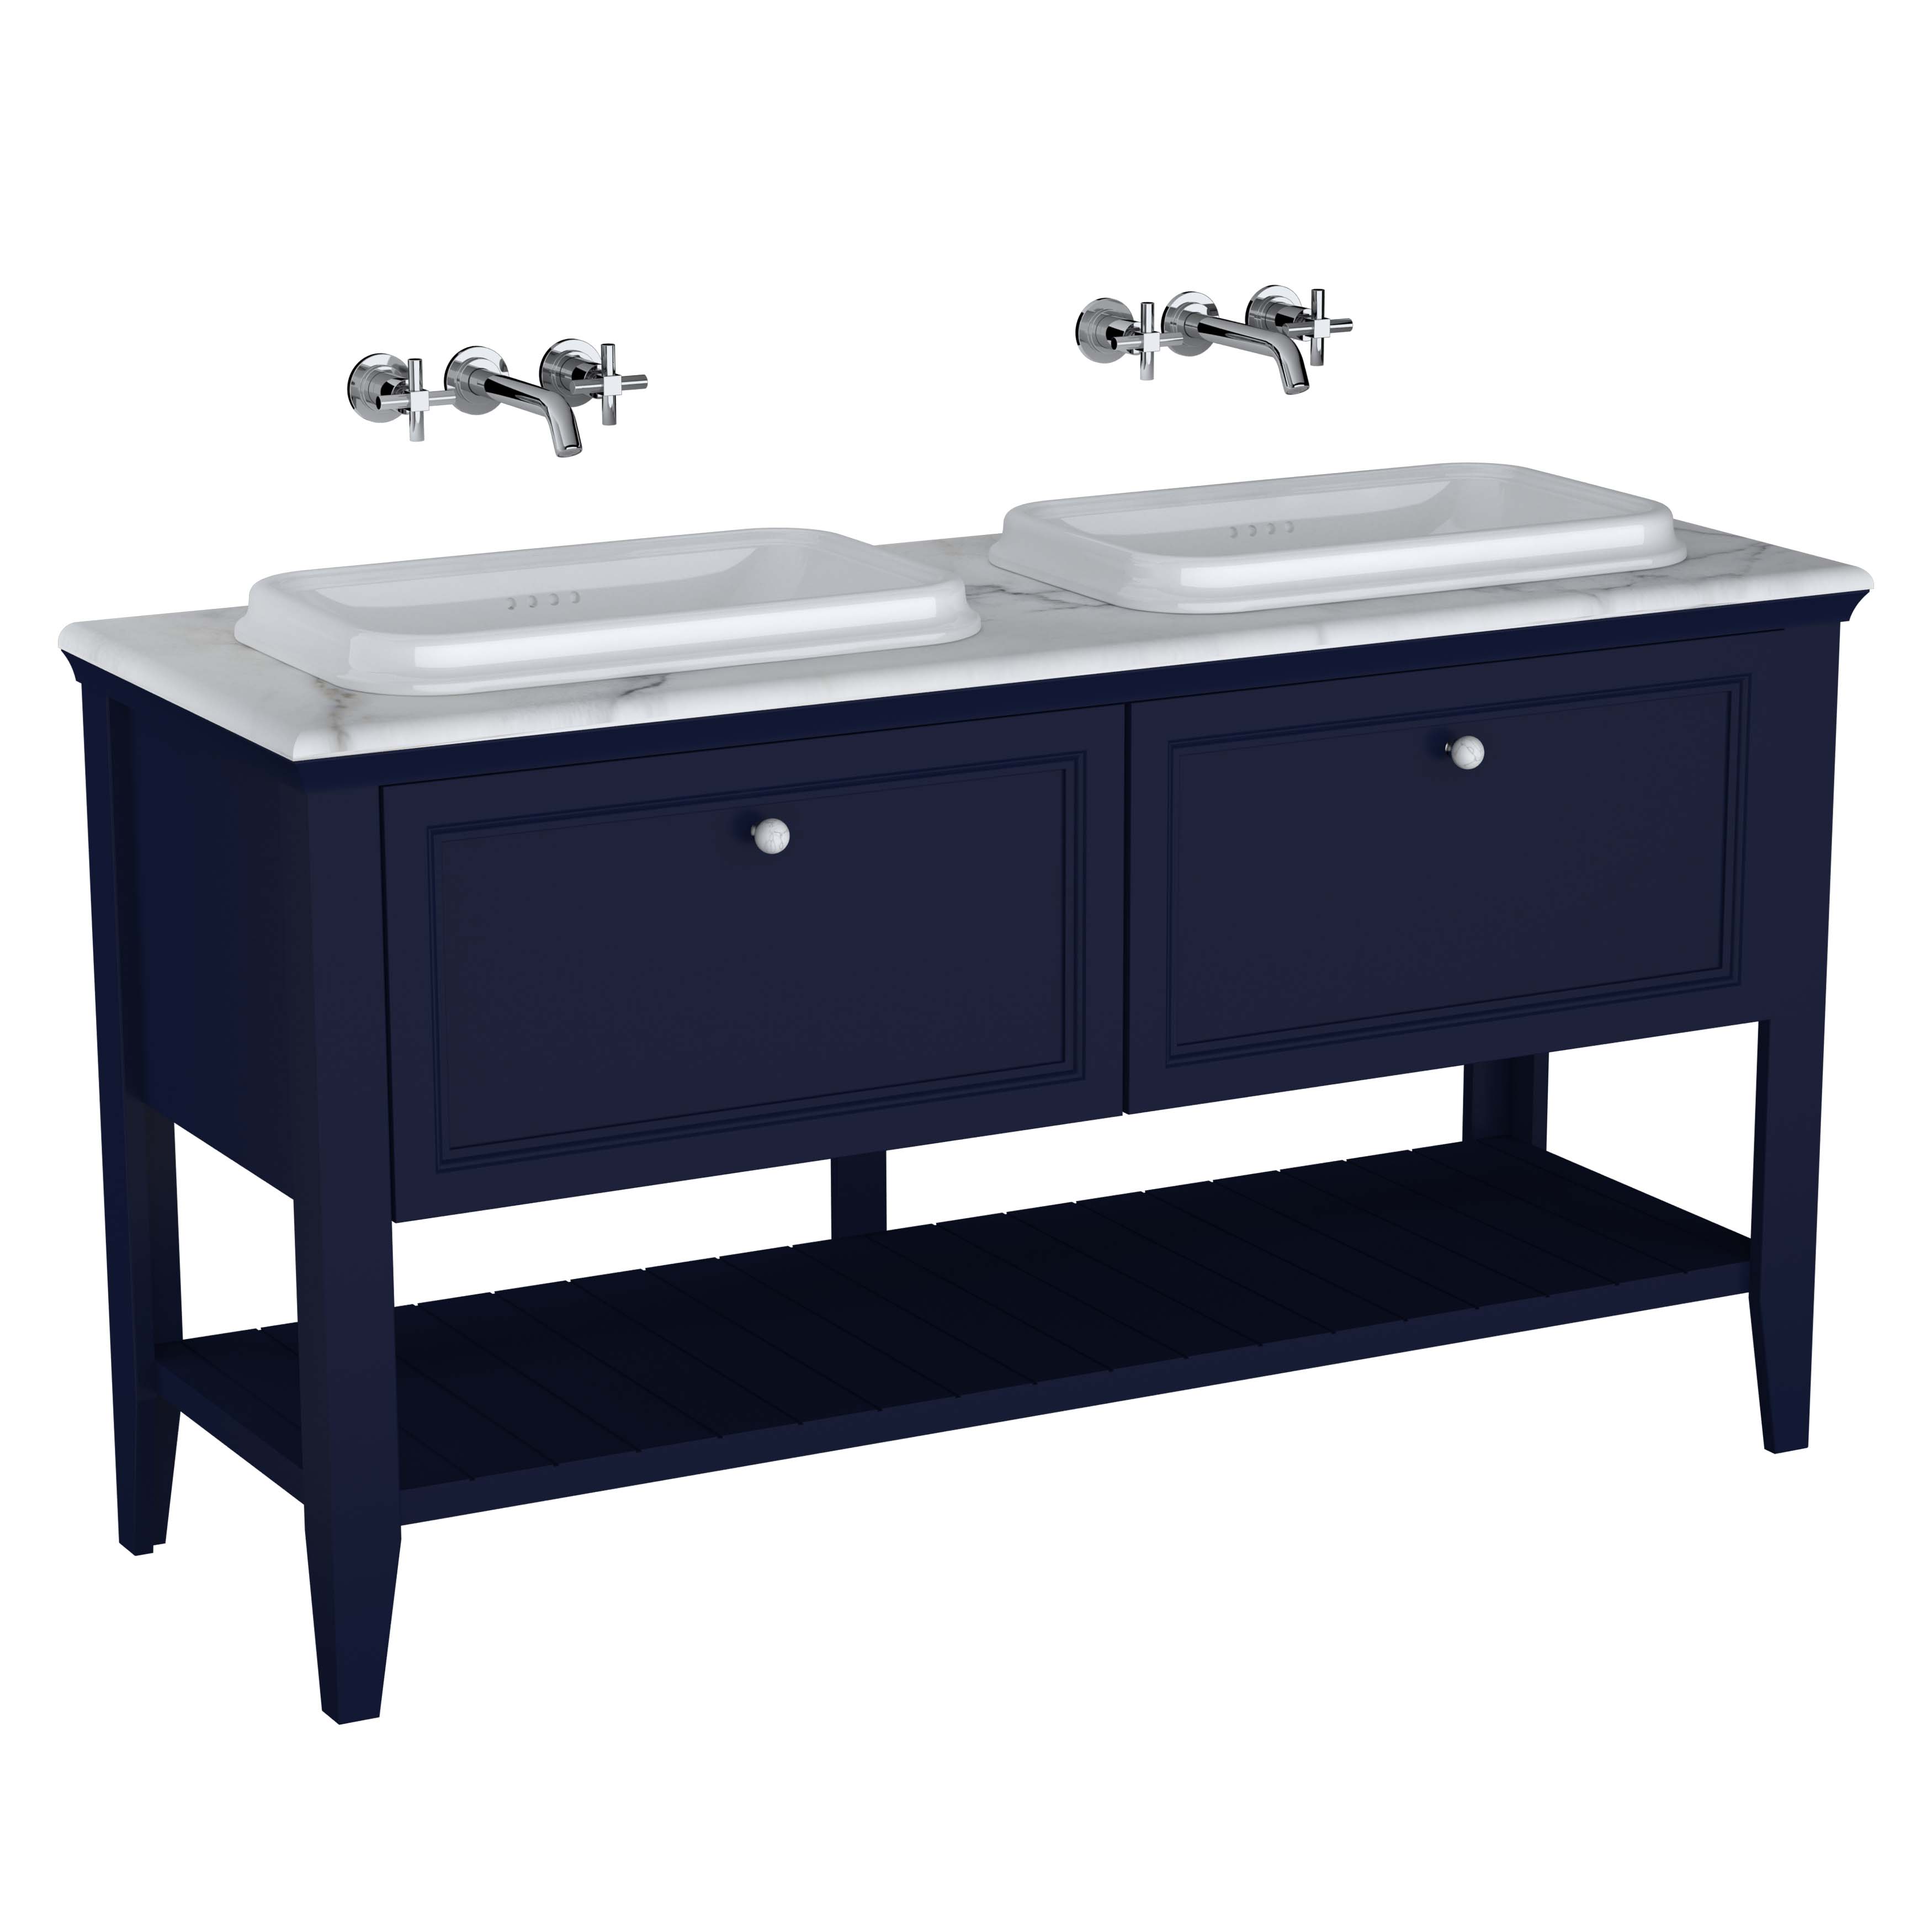 Valarte Set, 150 cm, Einbauwaschtische + Waschtischunterschrank 2 Laden, Stahlblau (Lack)